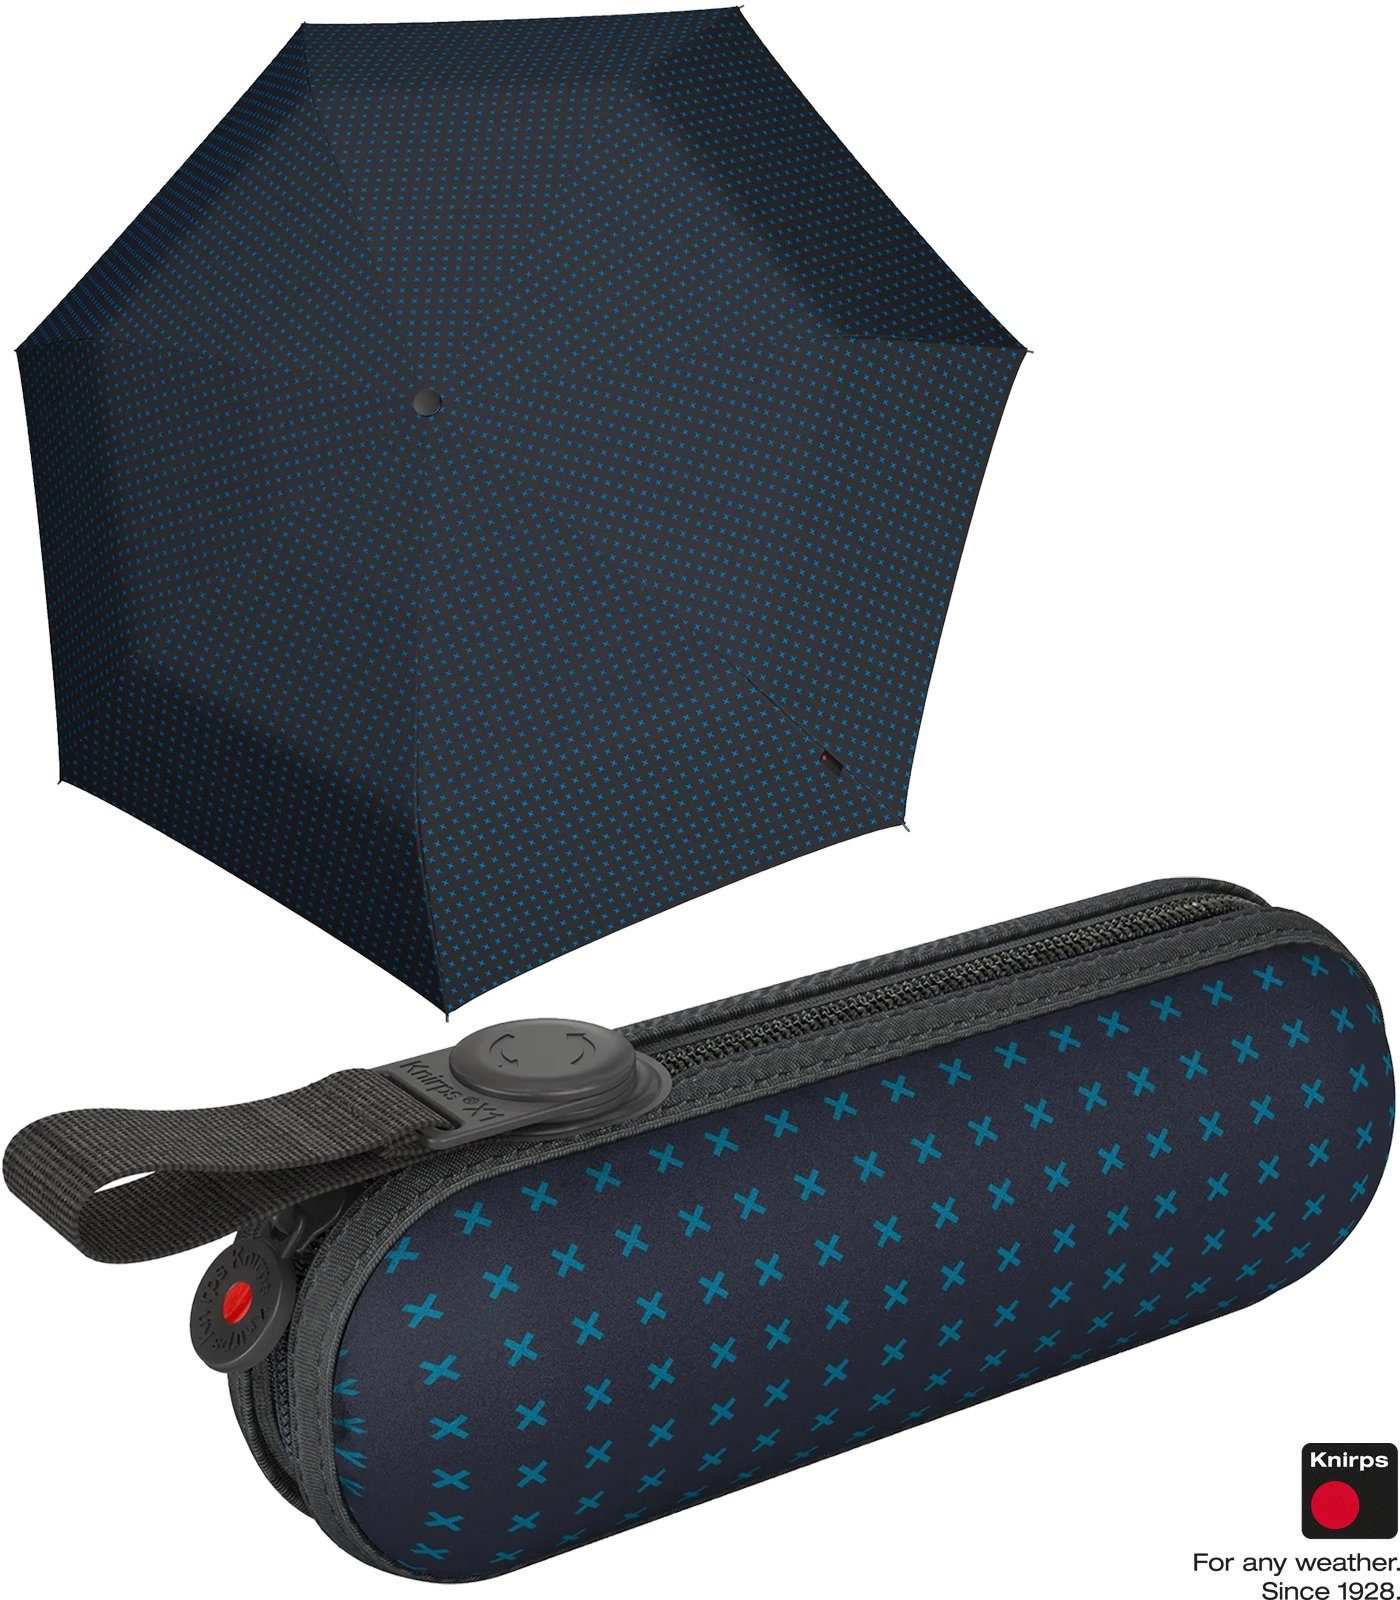 Taschenregenschirm leichte, kompakte - Knirps® Mini X1 Super 2Cross, kleine, mit der Begleiter blau ecorepel-Technologie